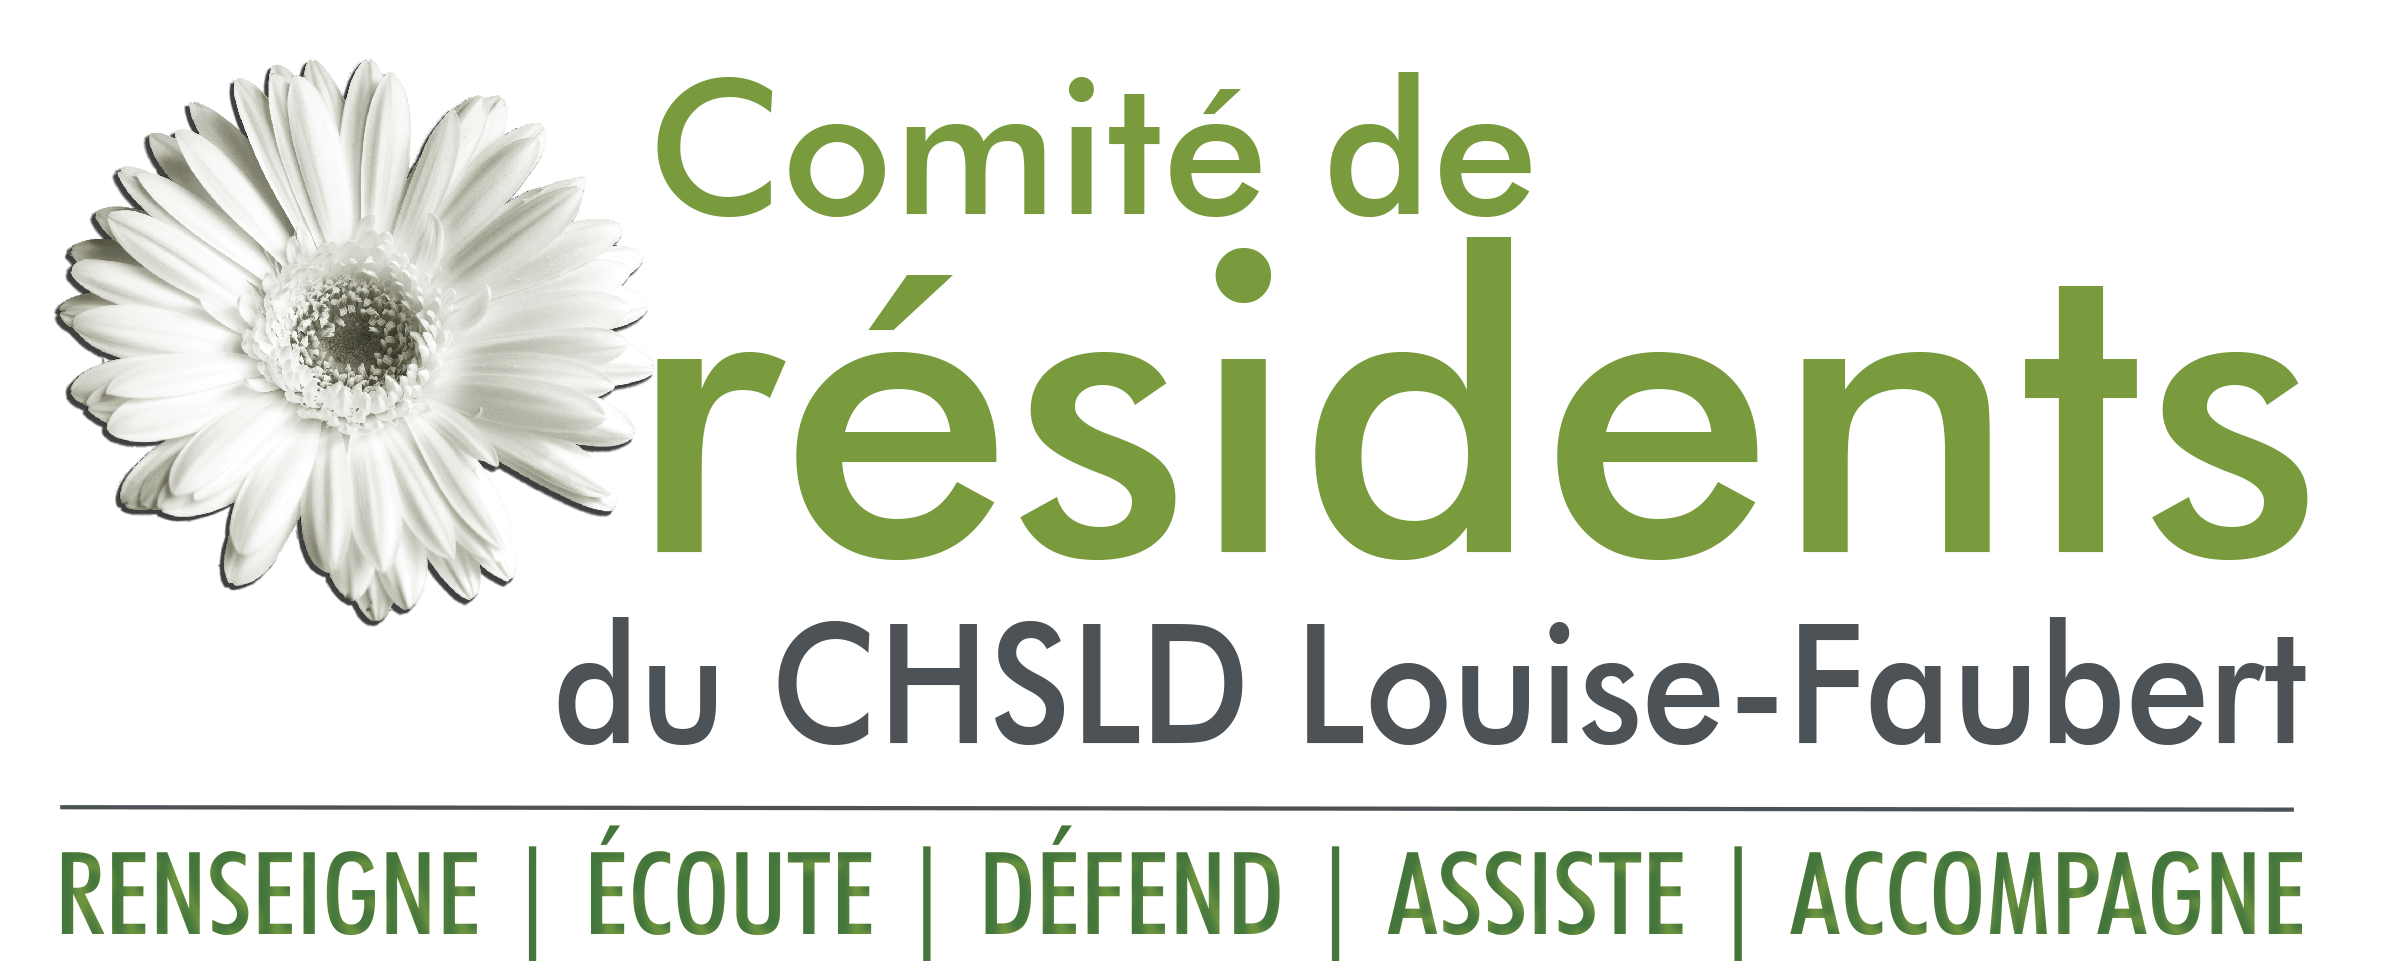 Comité résidents CHSLD Louise-Faubert